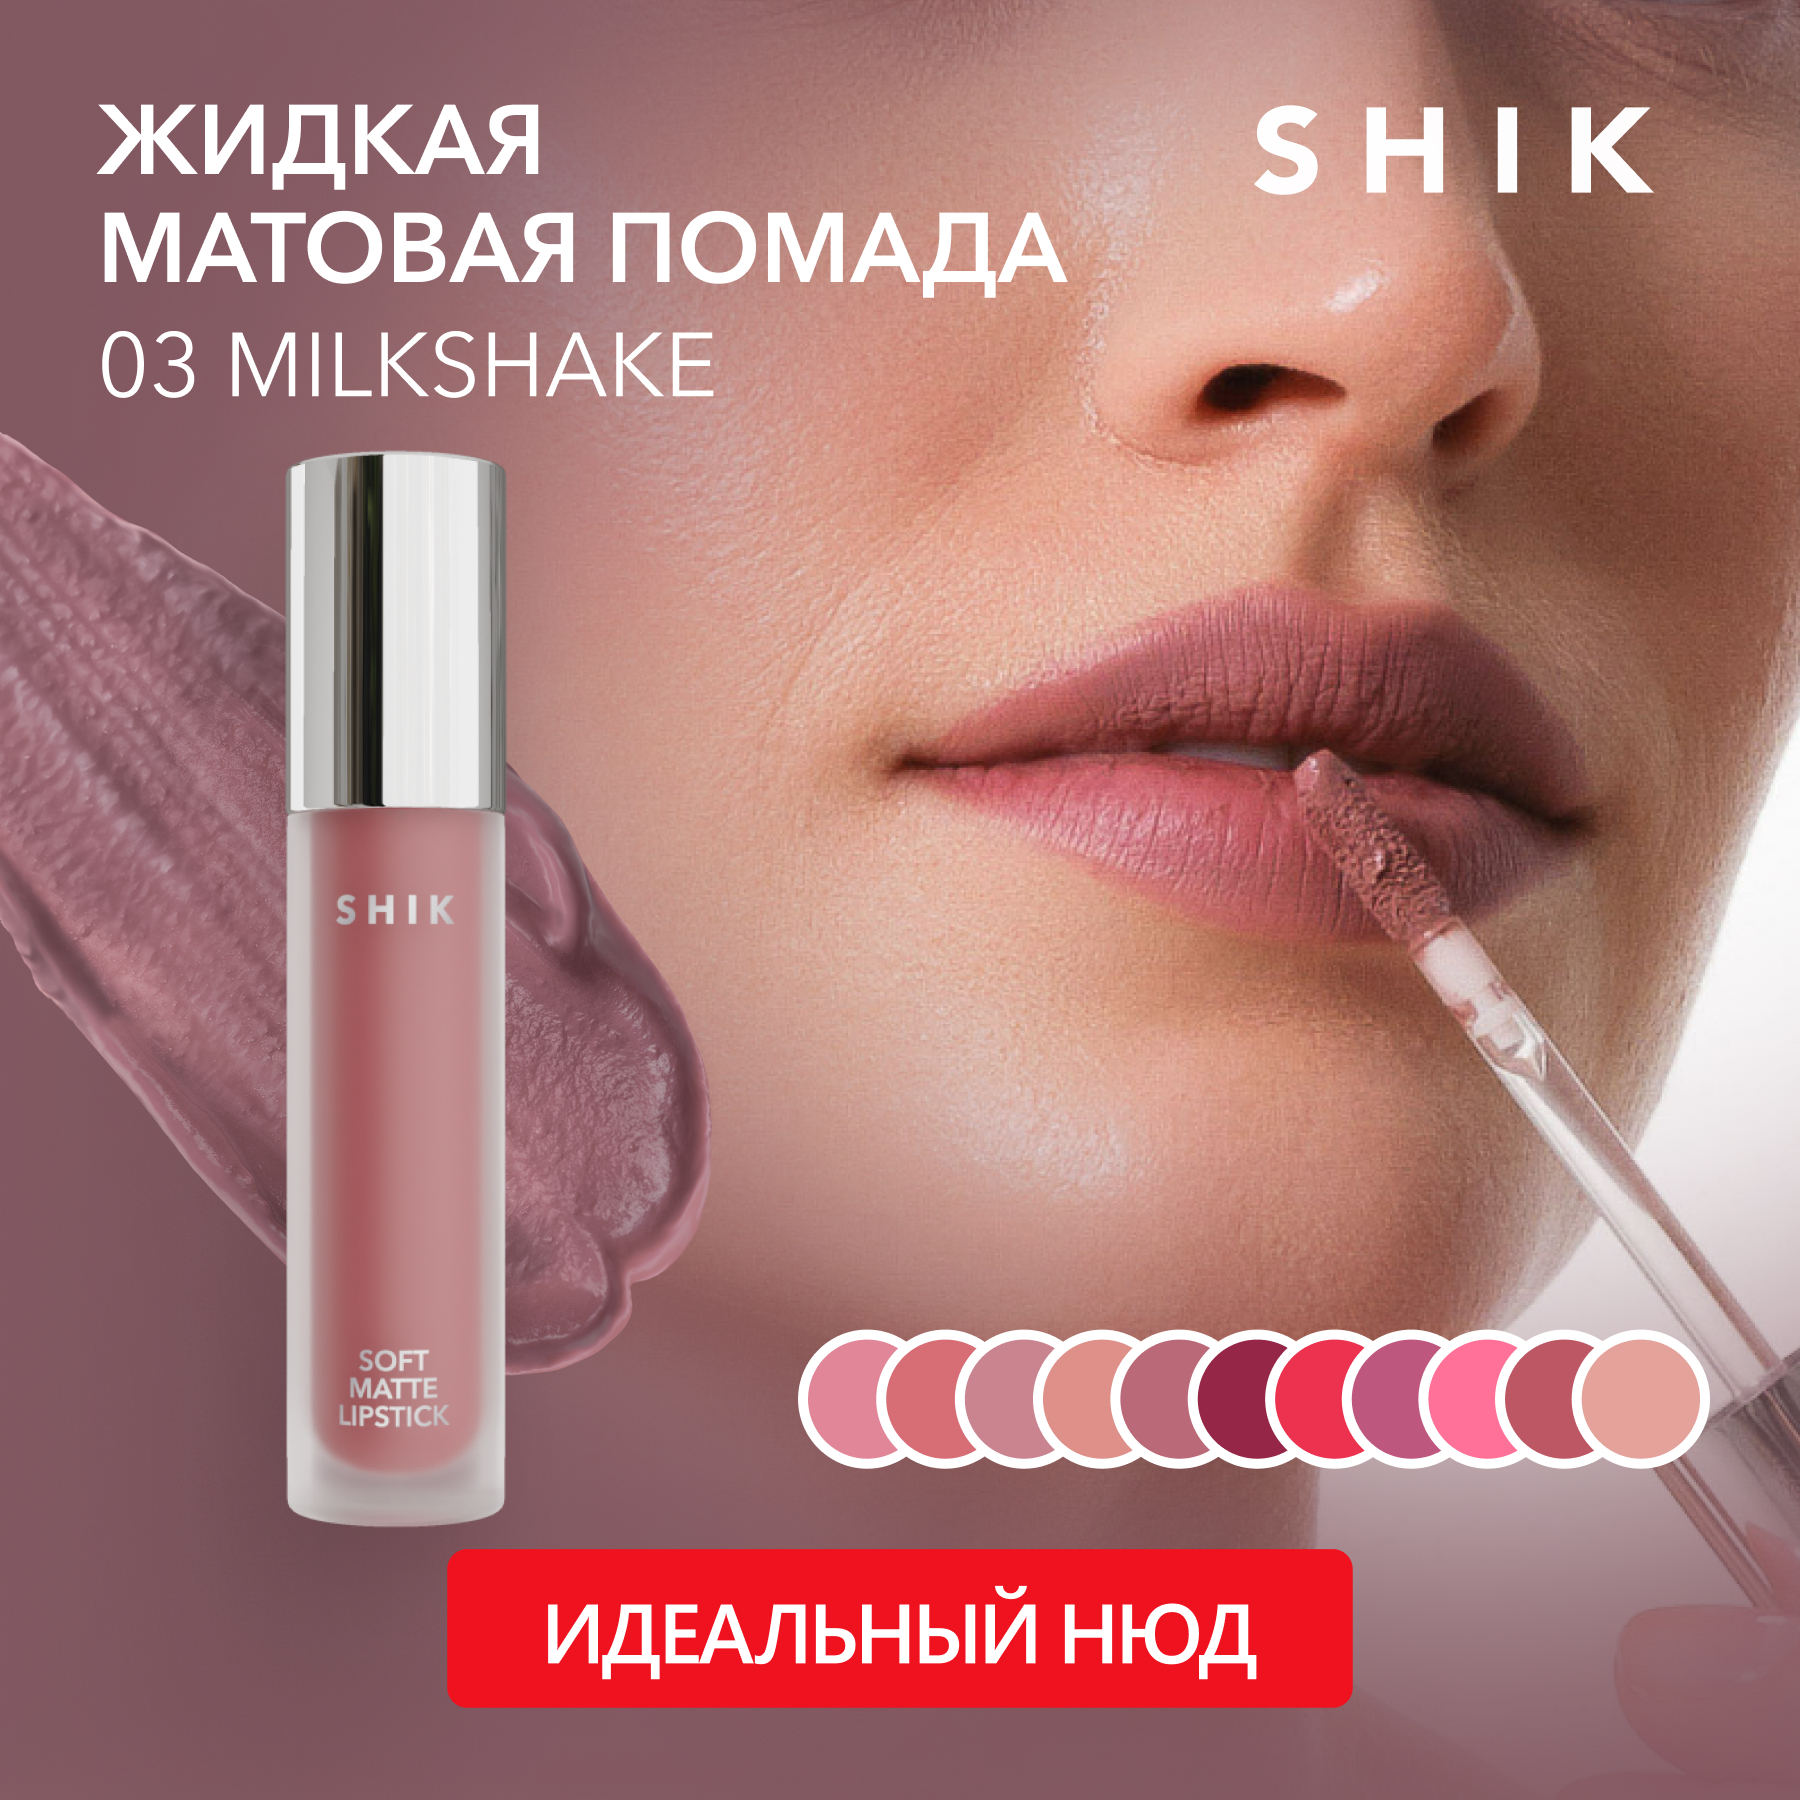 Помада для губ SHIK Soft Matte Lipstick жидкая, матовая тон 03 Milkshake 5 г помада для губ shik soft matte lipstick жидкая матовая тон 05 rosewood 5 г